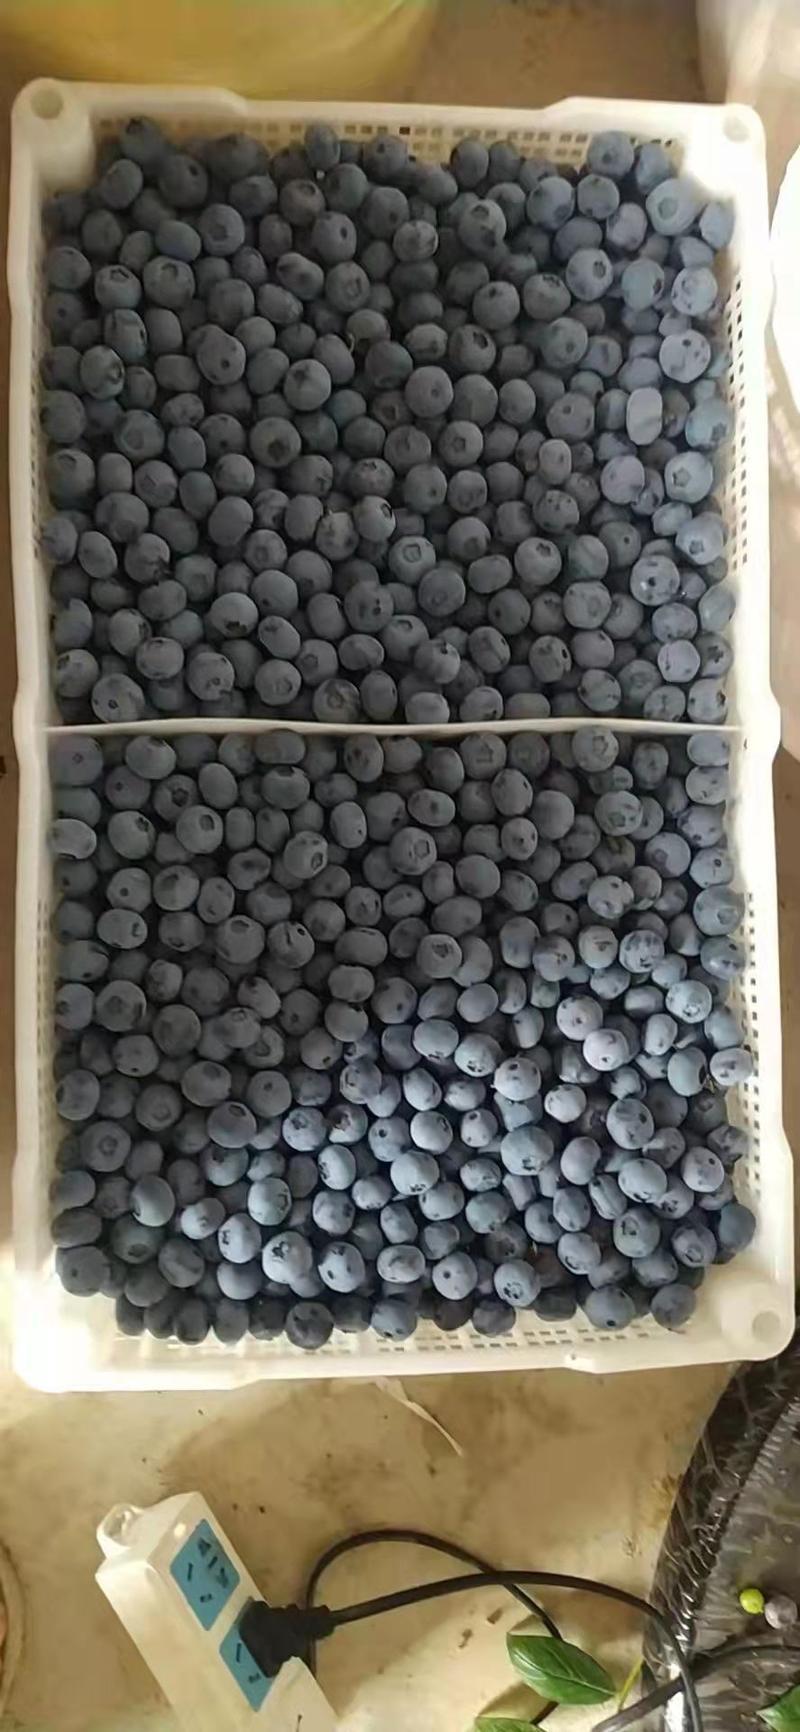 蓝莓山东暖棚蓝莓基地直销质量保证全国发货